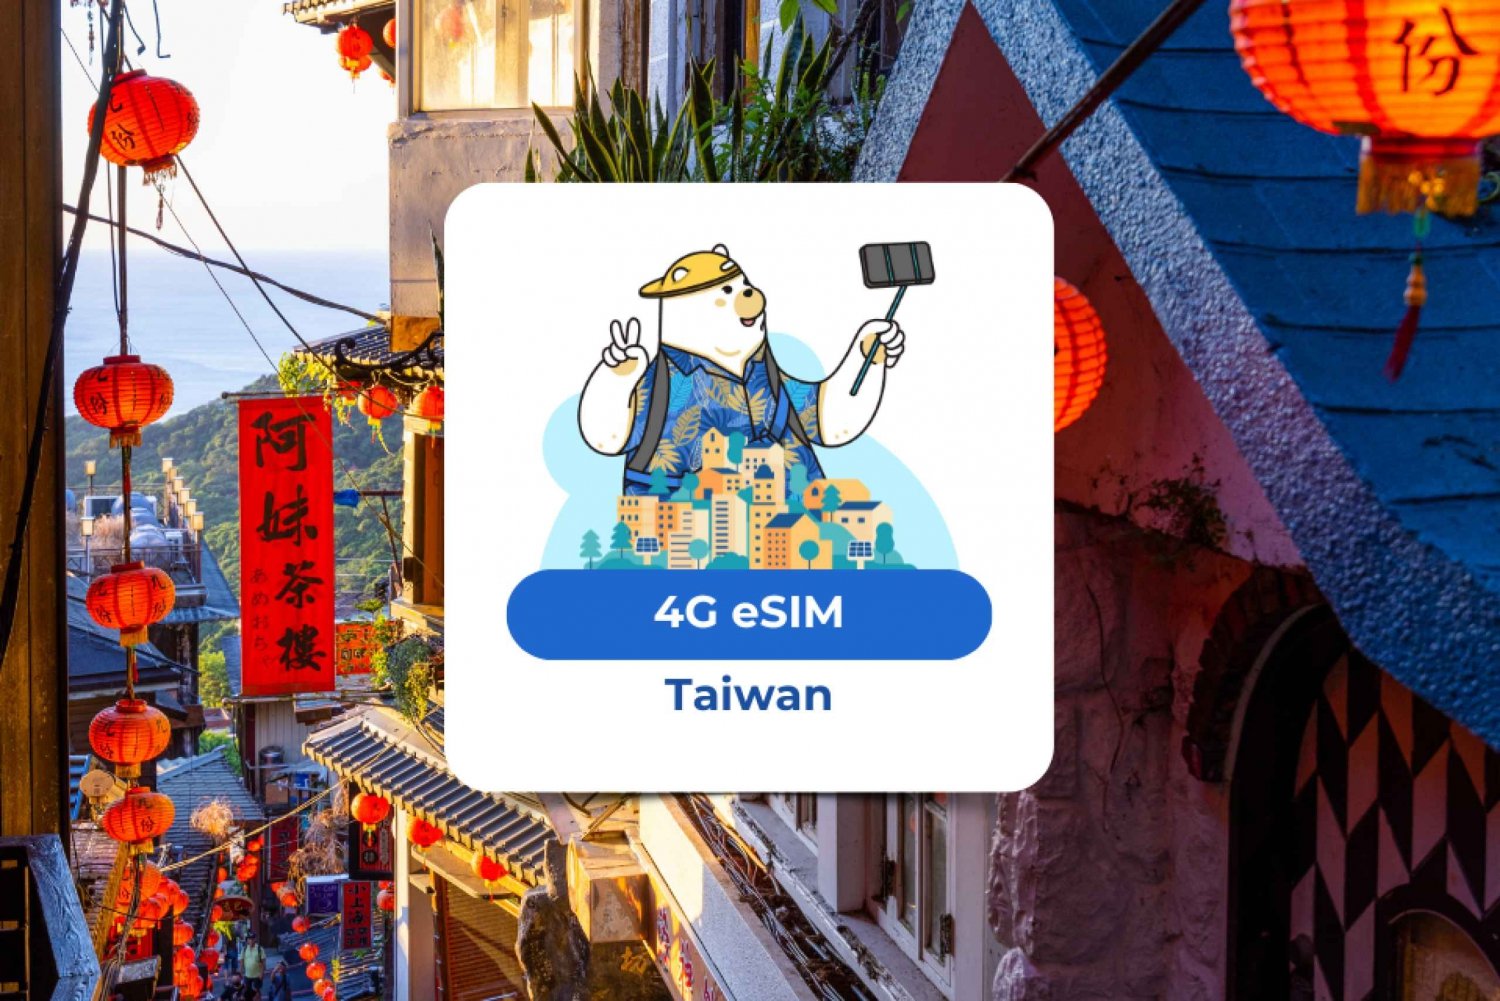 Taiwan: eSIM Mobile Data Plan